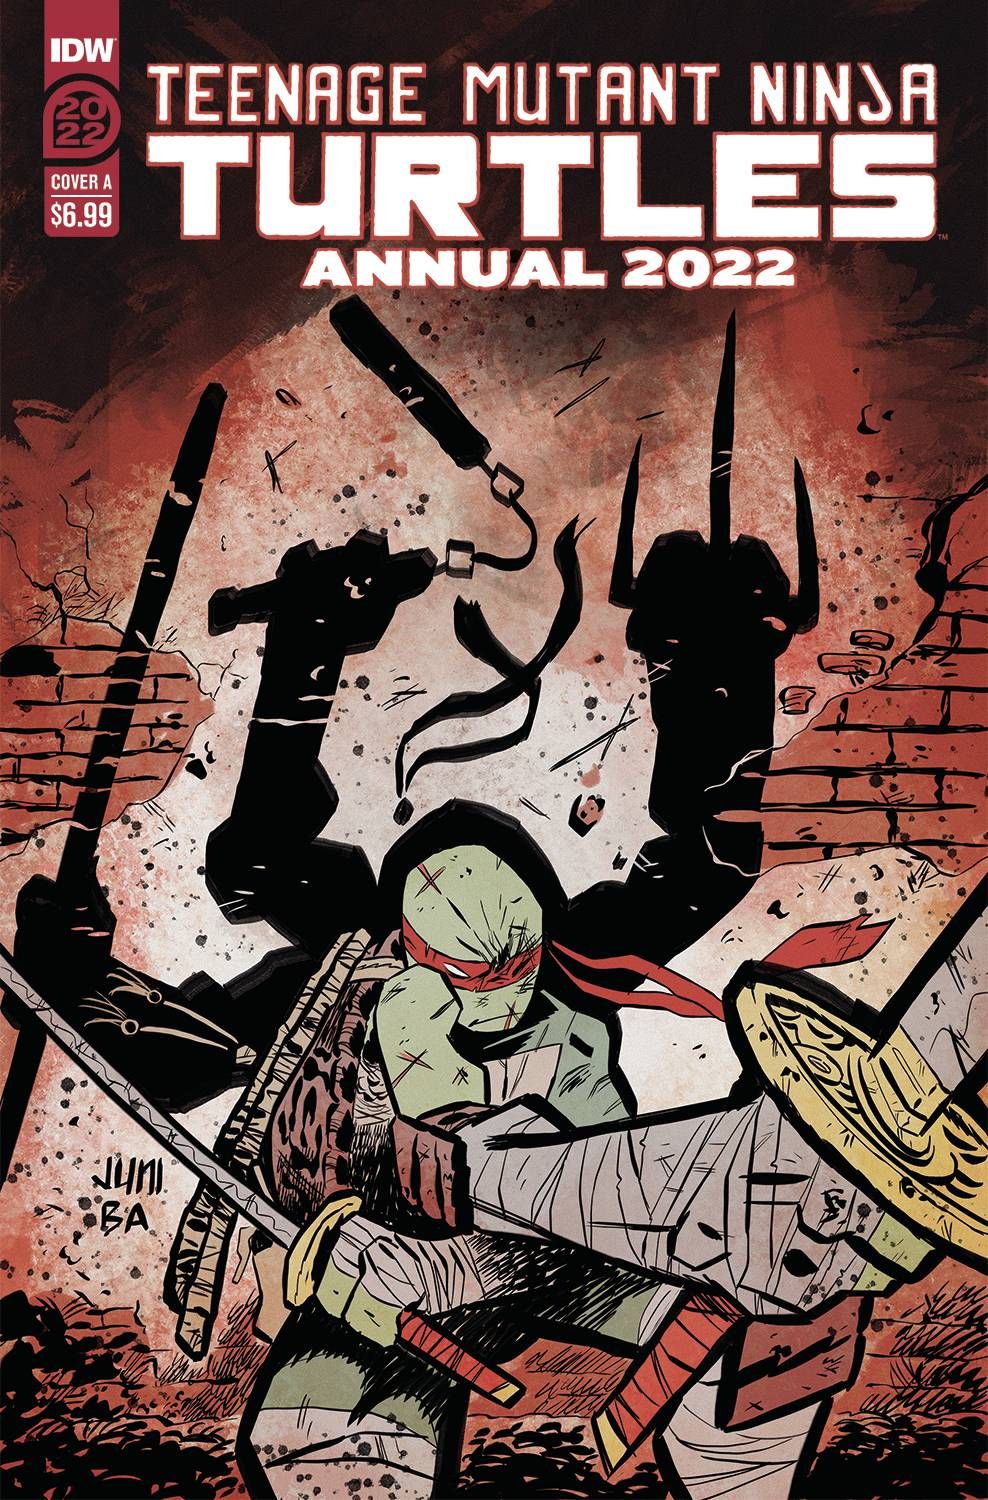 Teenage Mutant Ninja Turtles Annual 2022 Comic